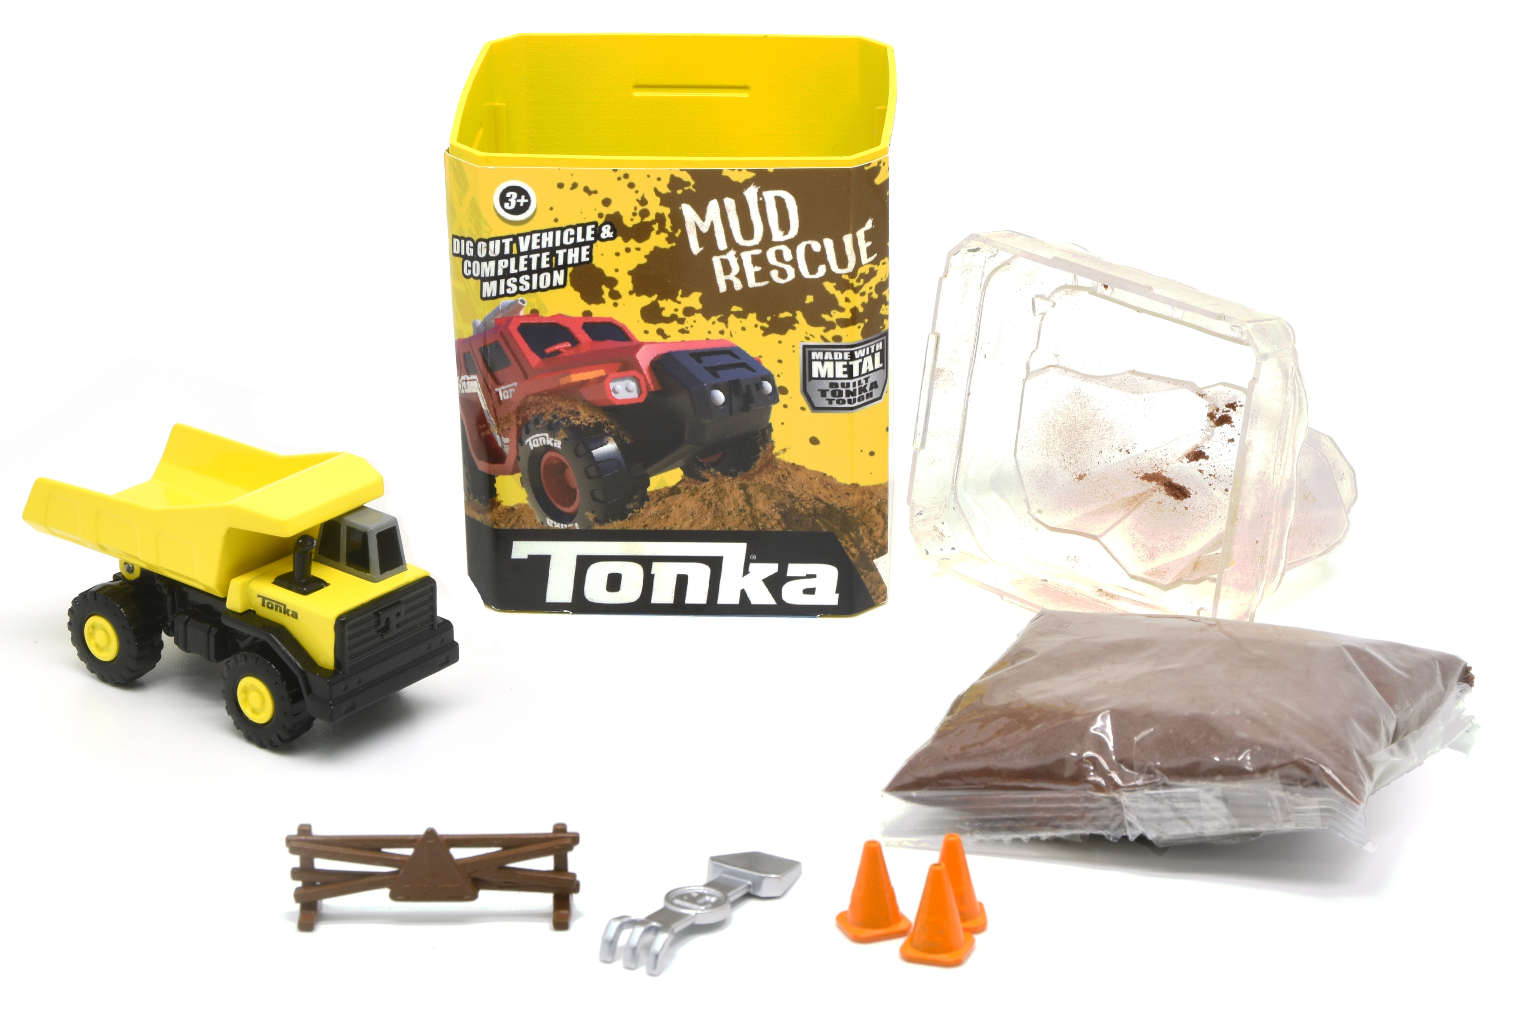 Tonka Mud Rescue Truck autko + piasek